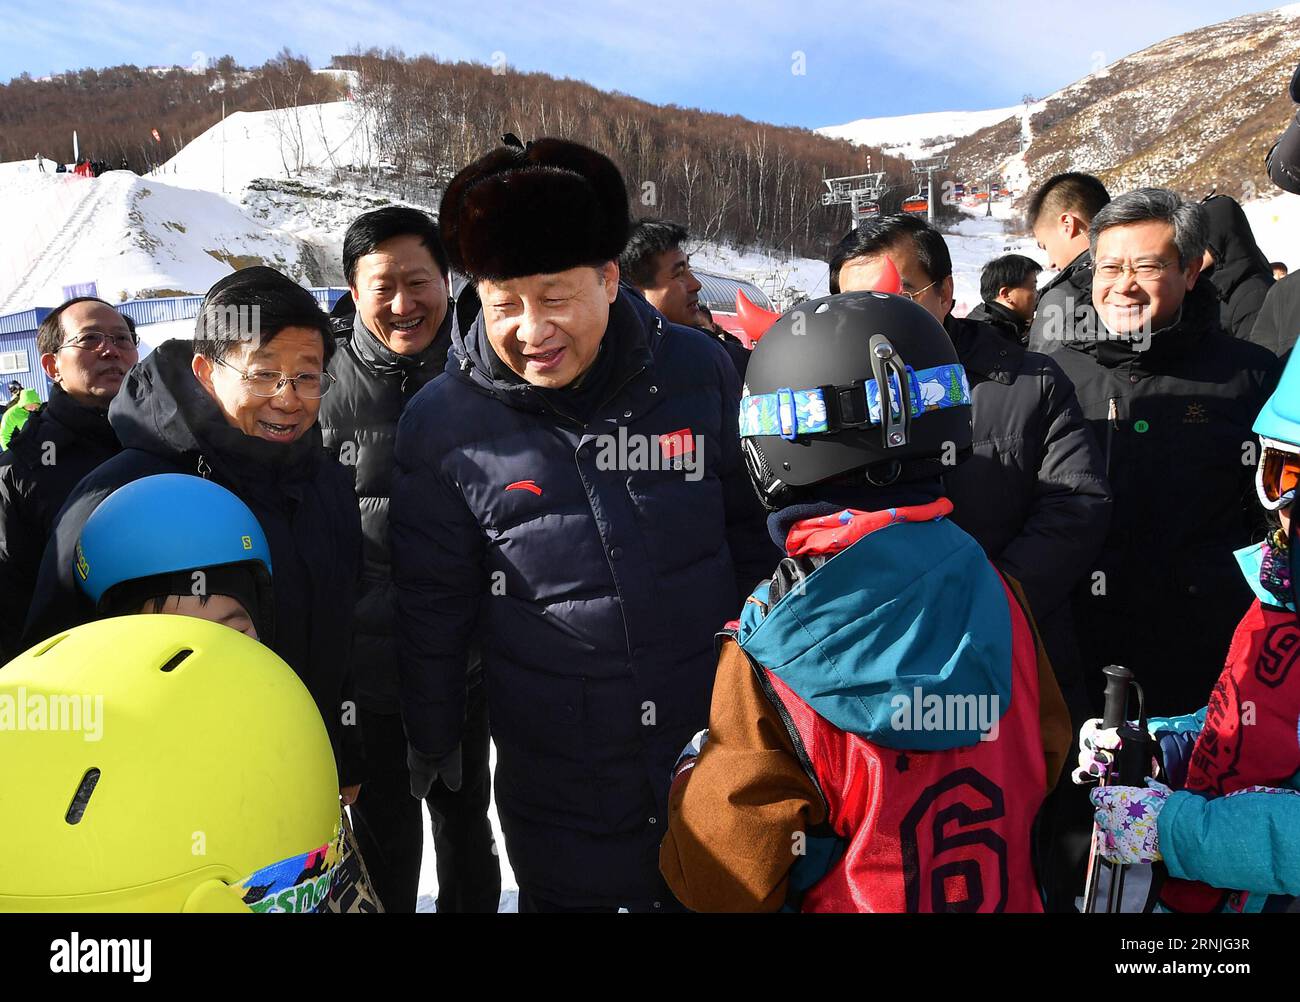 (170123) -- ZHANGJIAKOU, 23. Januar 2017 -- der chinesische Präsident Xi Jinping ermutigt Kinder, Ski-Wintercamps im Skigebiet Genting zu besuchen, während er die Vorbereitungsarbeiten für die Olympischen Winterspiele 2022 in Peking in der Stadt Zhangjiakou, Provinz Hebei, im Norden Chinas, am 23. Januar 2017 inspiziert. ) (lfj) CHINA-XI JINPING-2022 WINTEROLYMPISCHE INSPEKTION (CN) LixTao PUBLICATIONxNOTxINxCHN Zhangjiakou 23. Januar 2017 der chinesische Präsident Xi Jinping ermutigt Kinder, Skiwinterlager IM Skigebiet Genting zu besuchen, während er die Vorbereitungsarbeiten für die Olympischen Winterspiele 2022 in Peking in der Stadt Zhangjiakou, Nordchina S, inspiziert Stockfoto